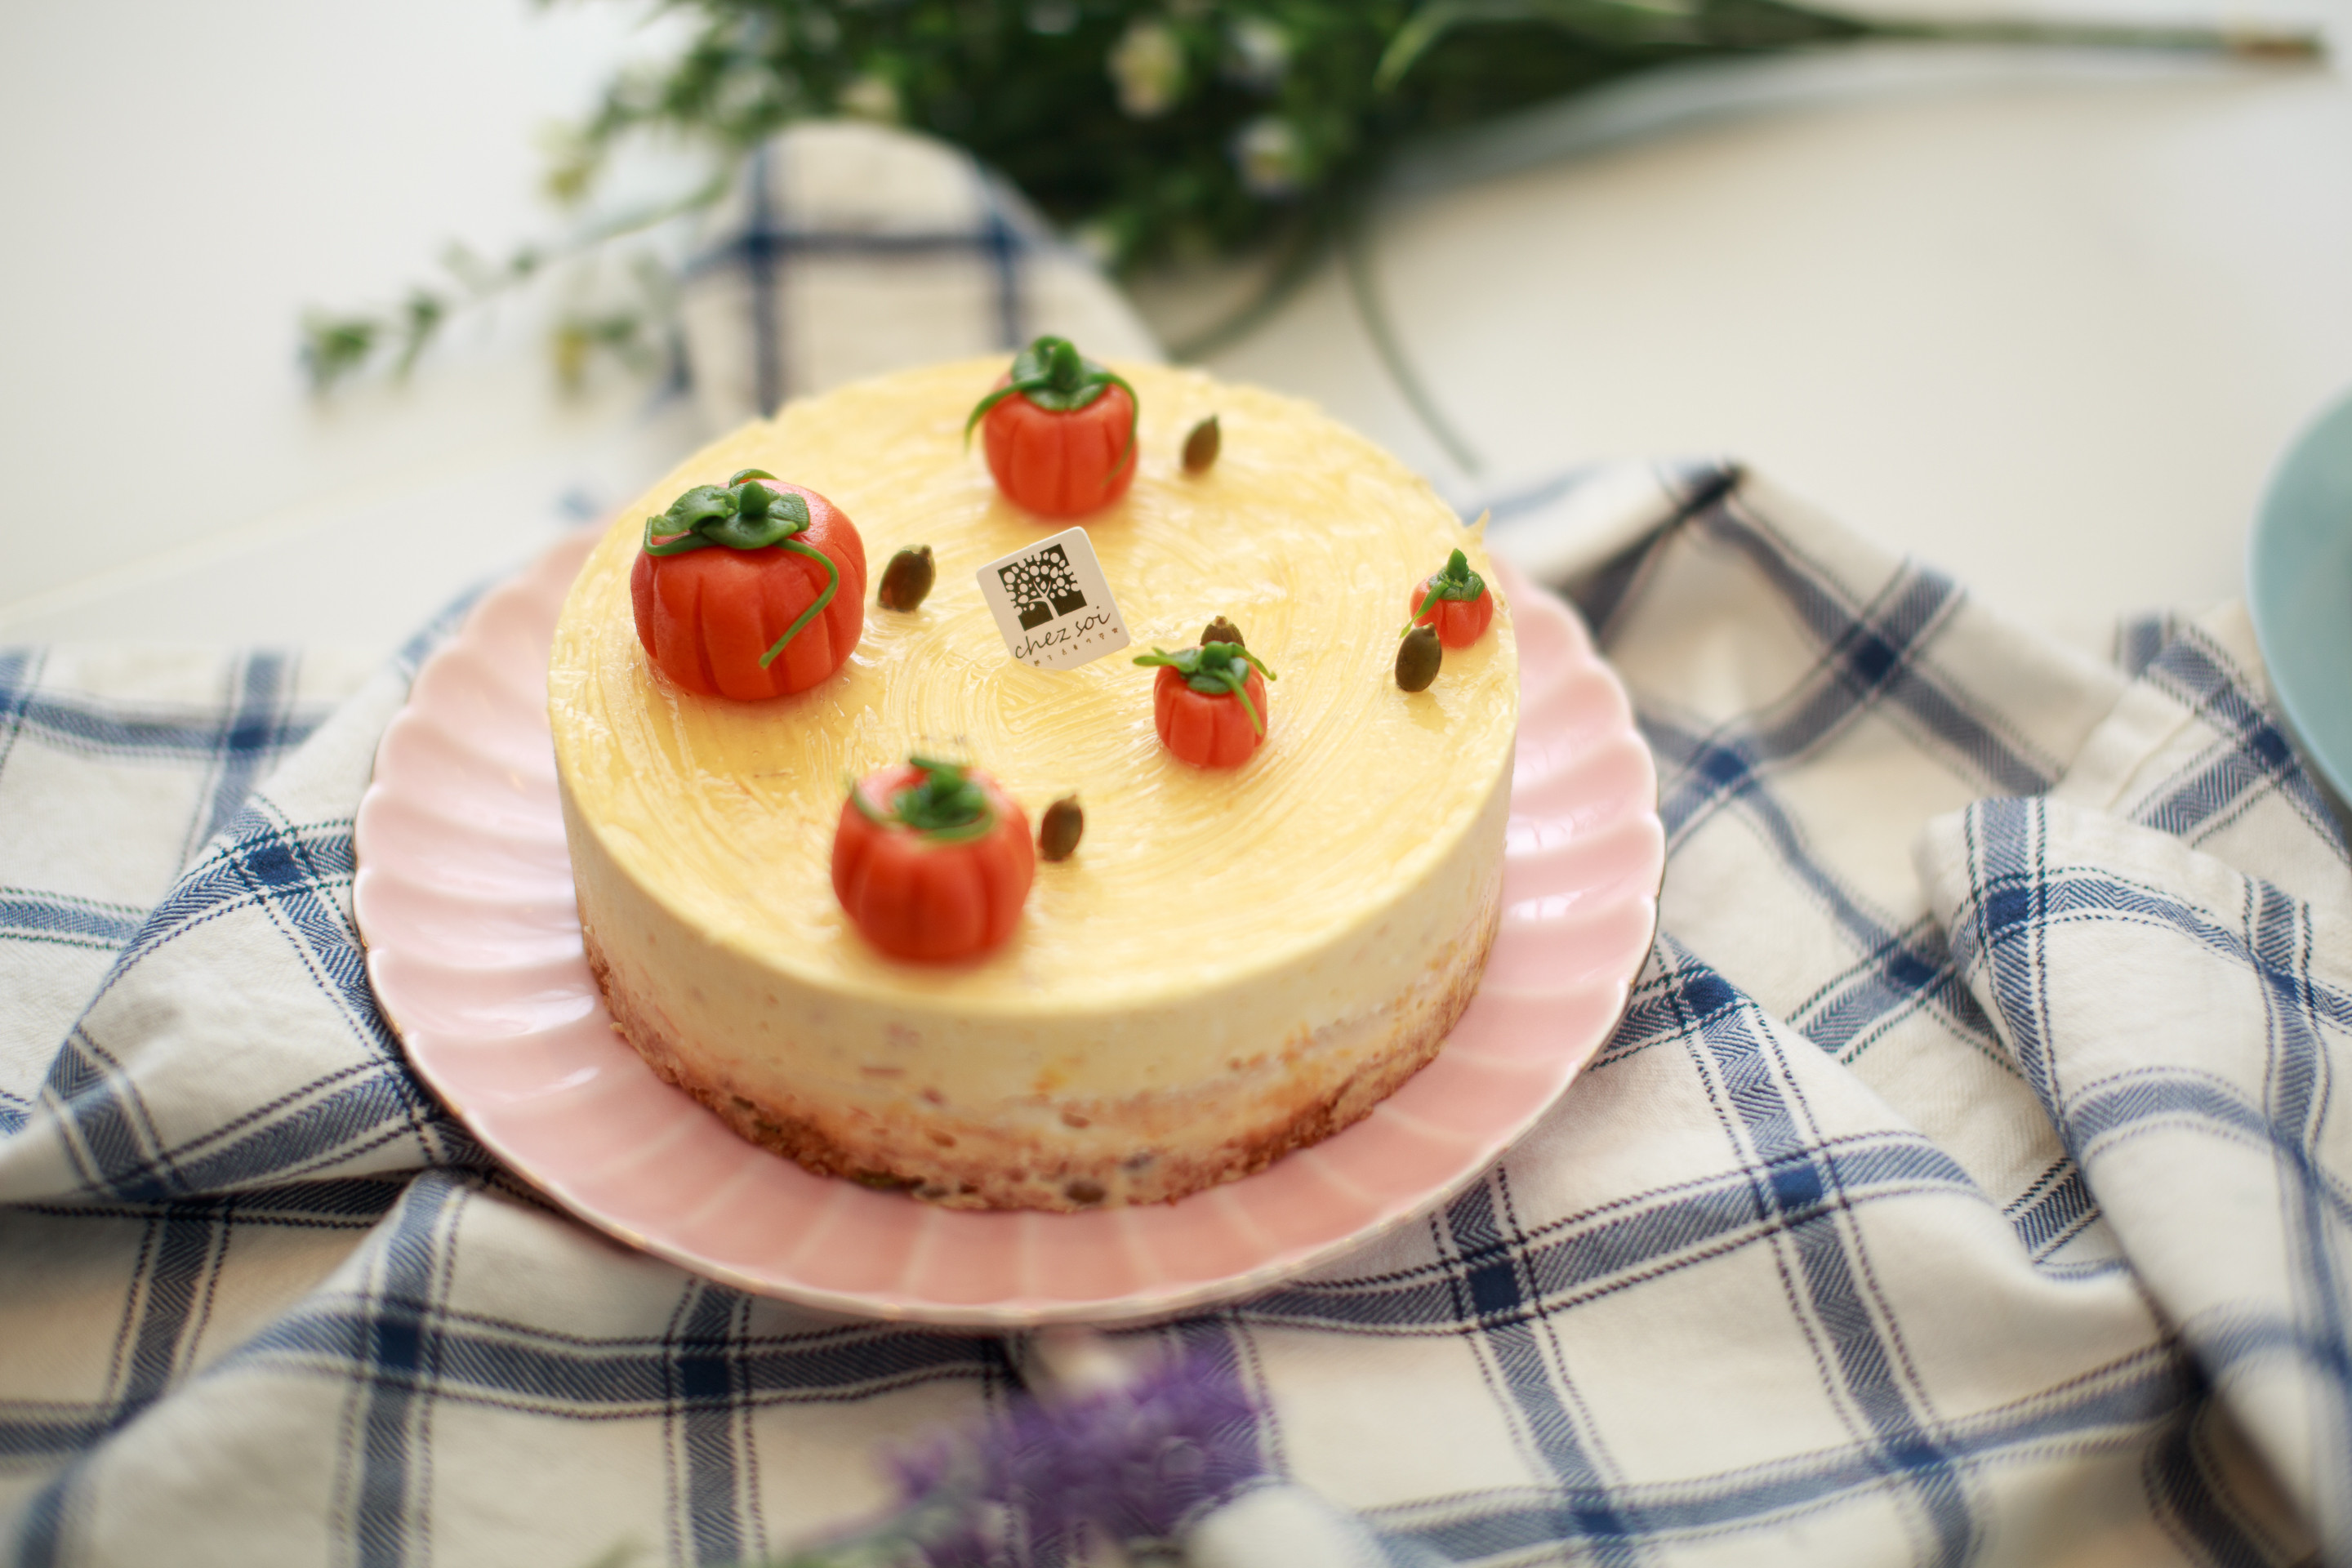 【Tomiz小食堂】金瓜起司乳酪蛋糕